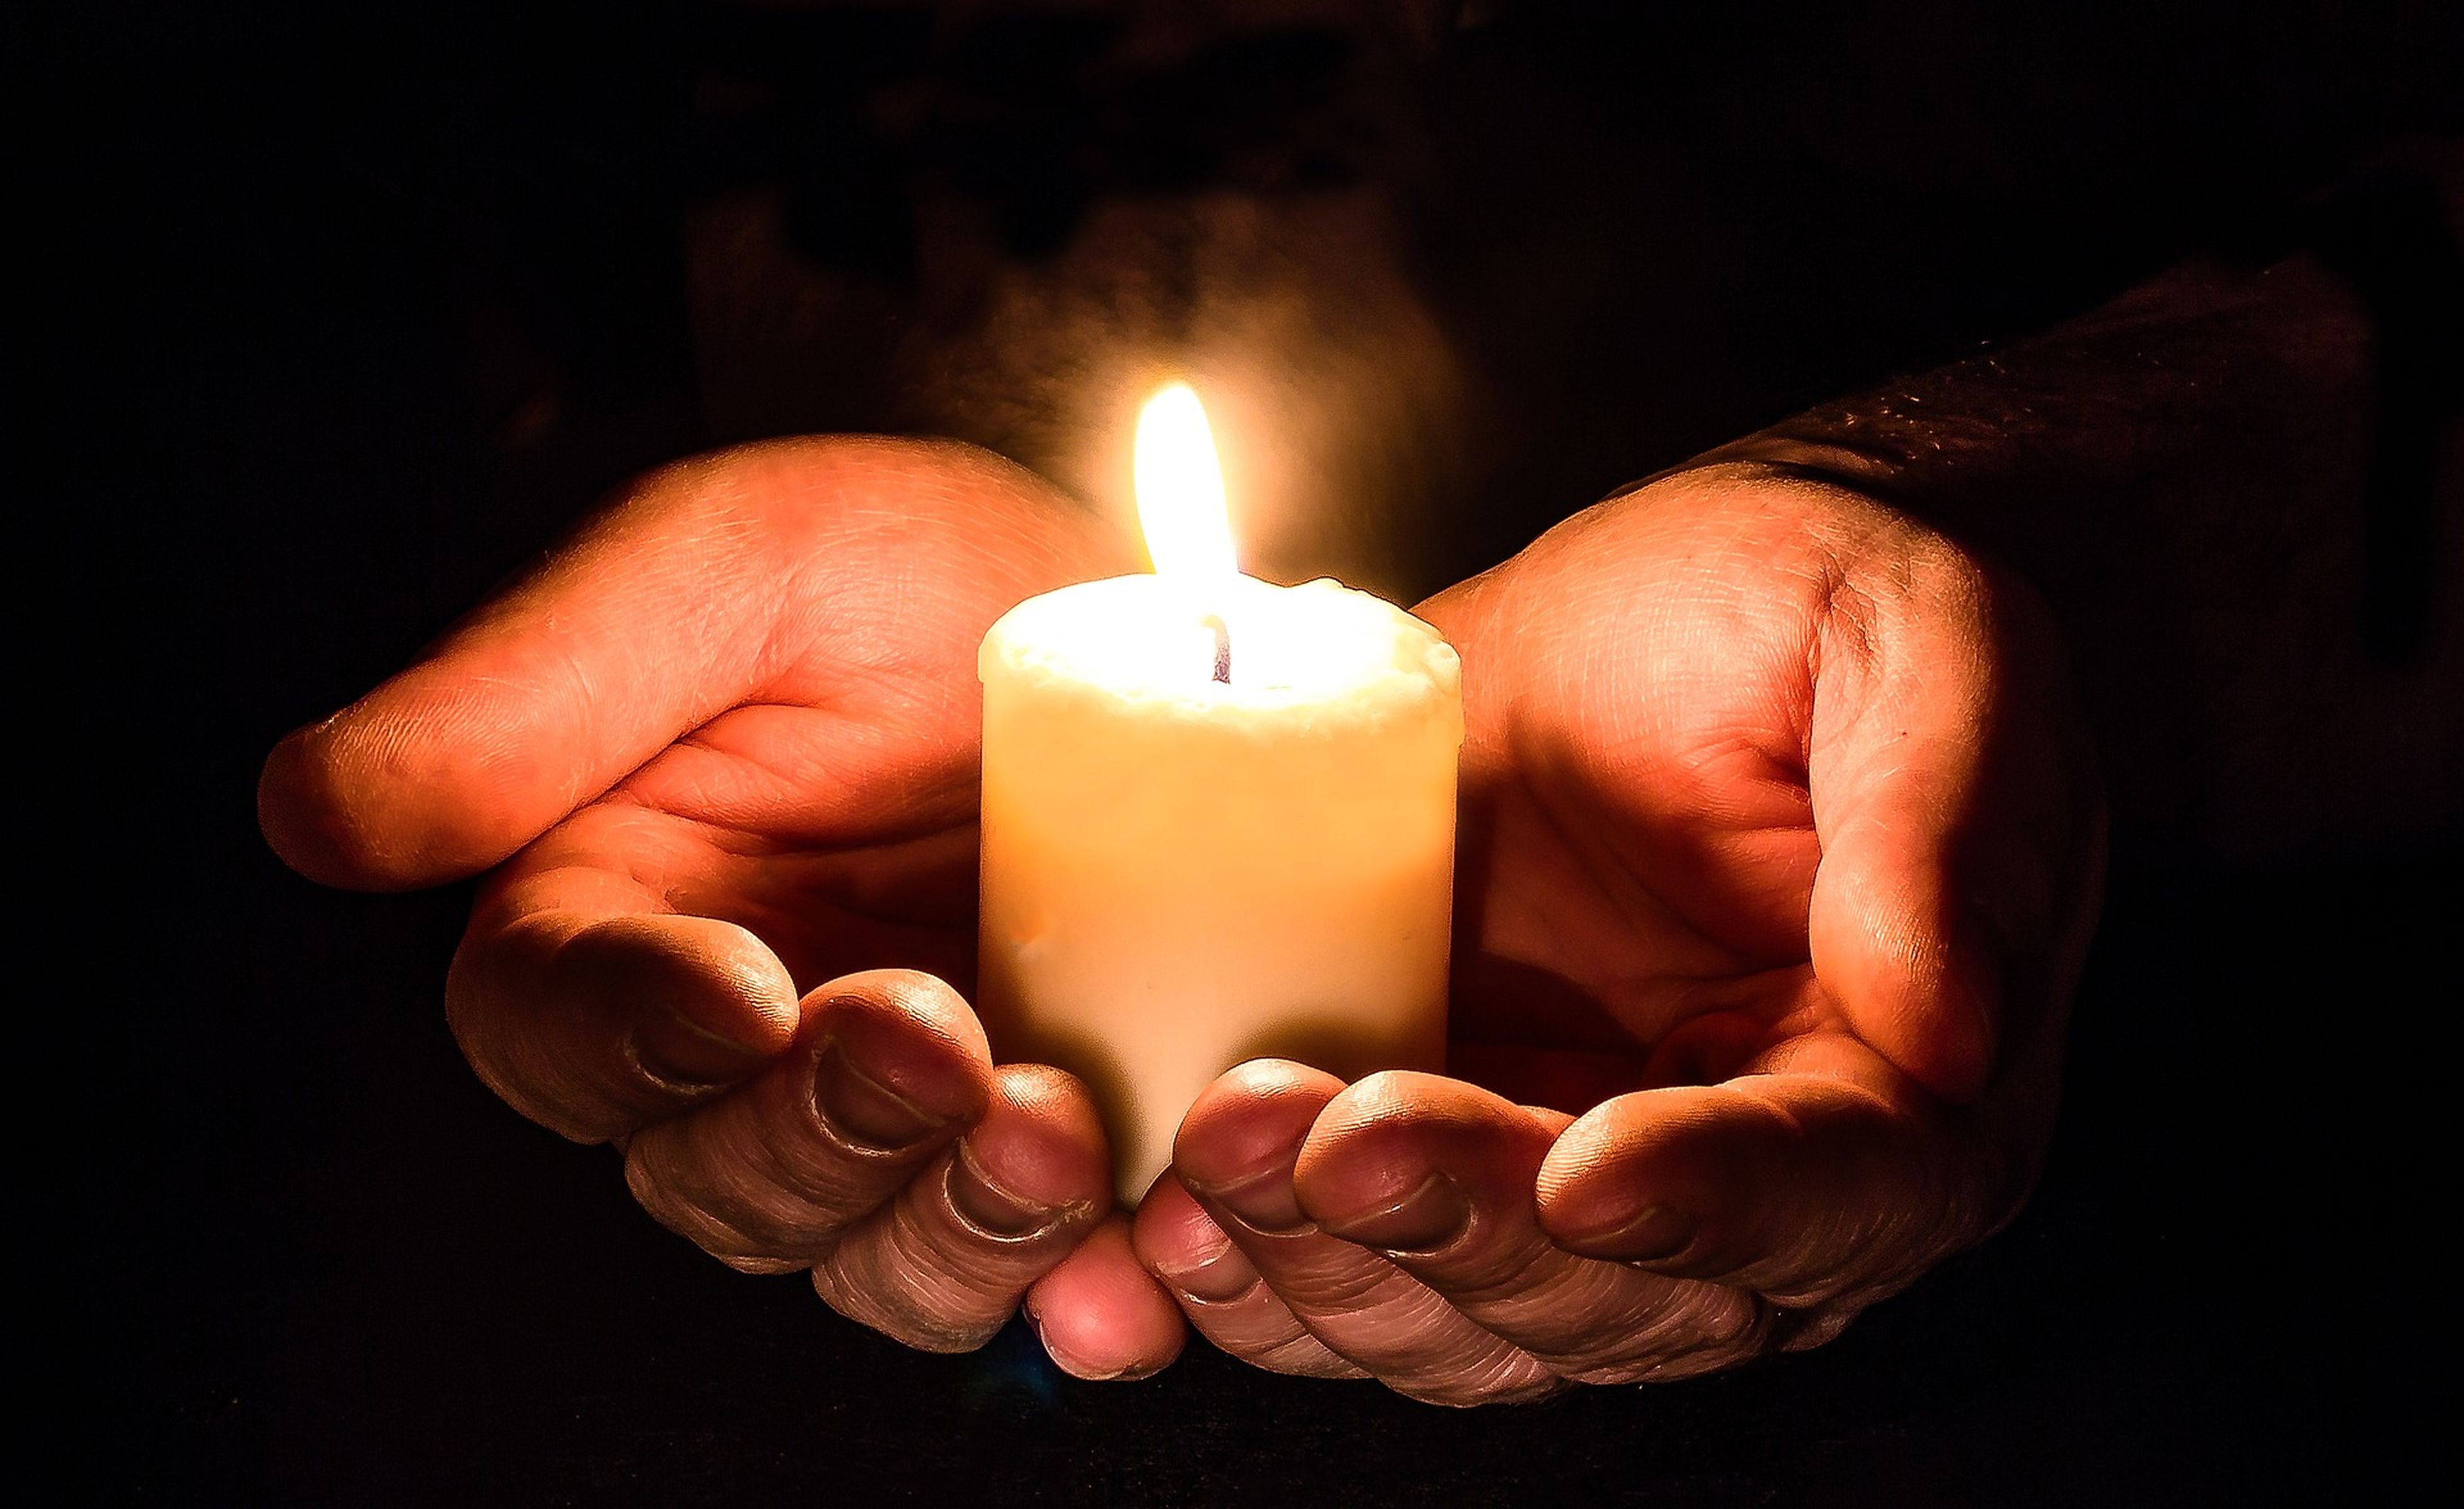 Unas manos sujetan una vela.